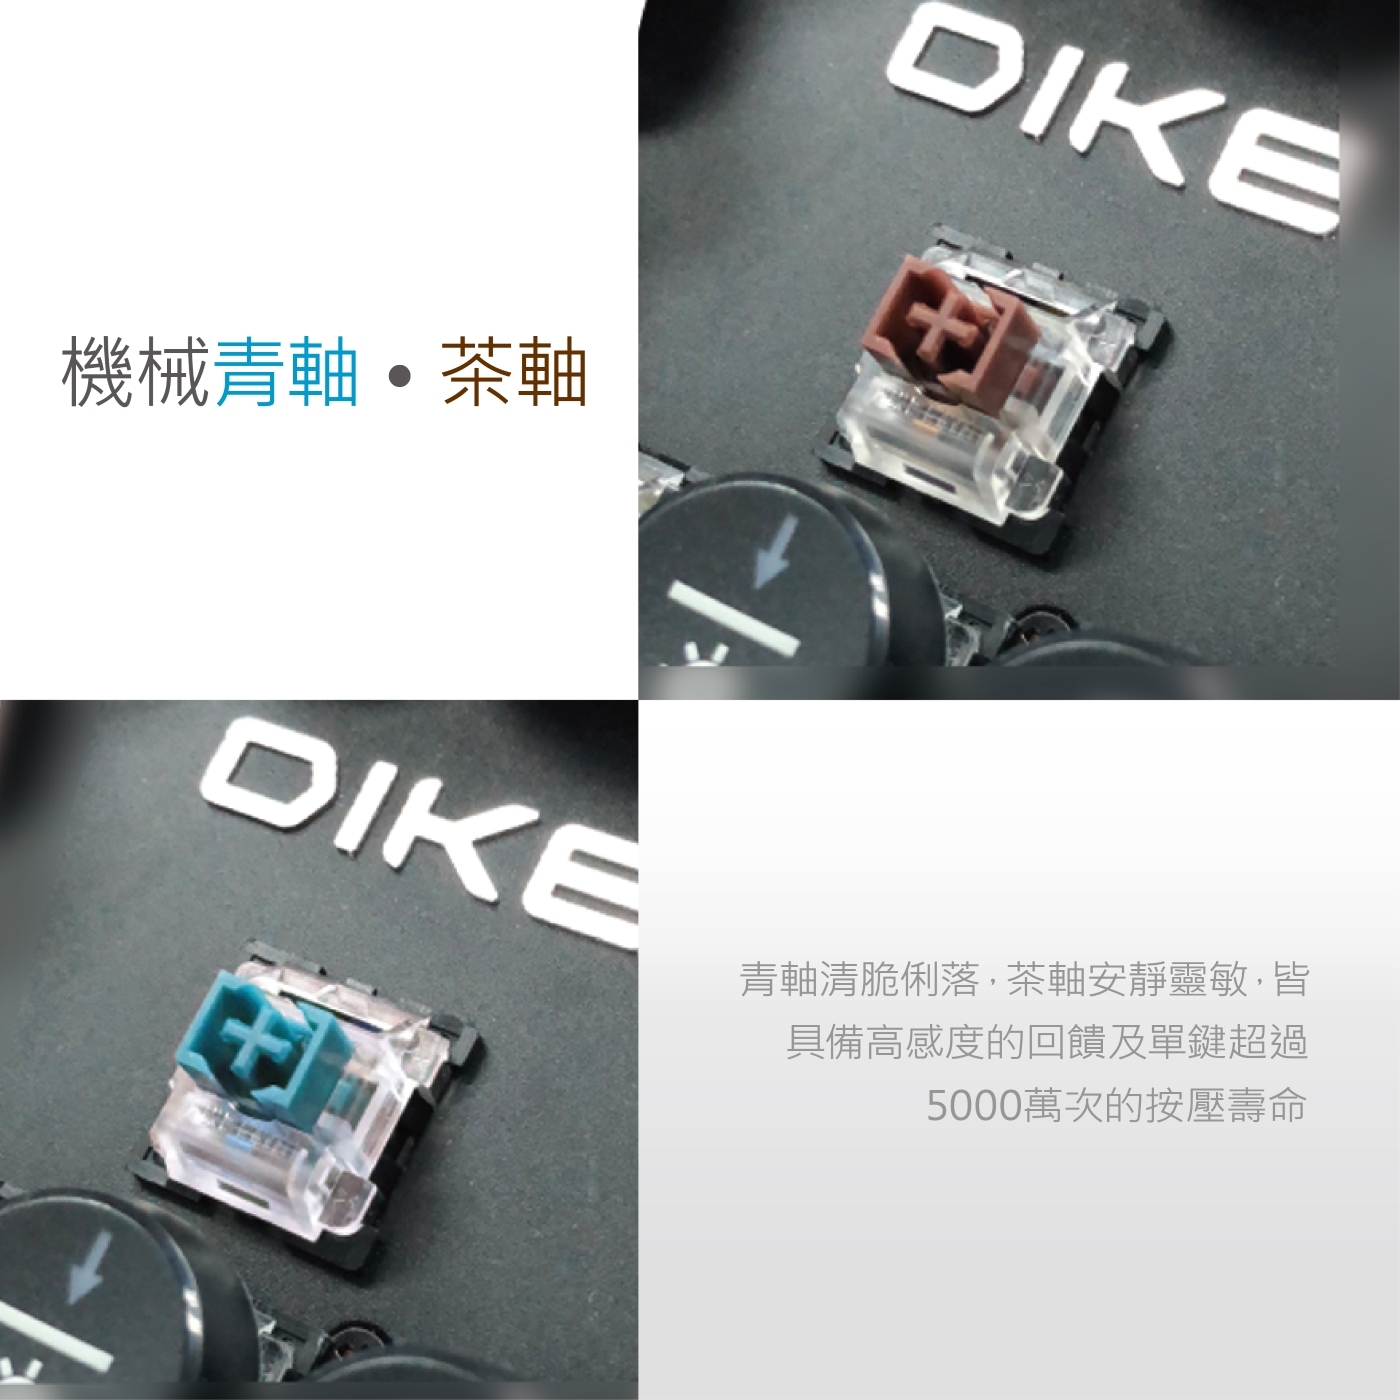 DIKE DK900 復古圓鍵機械鍵盤104鍵-青軸